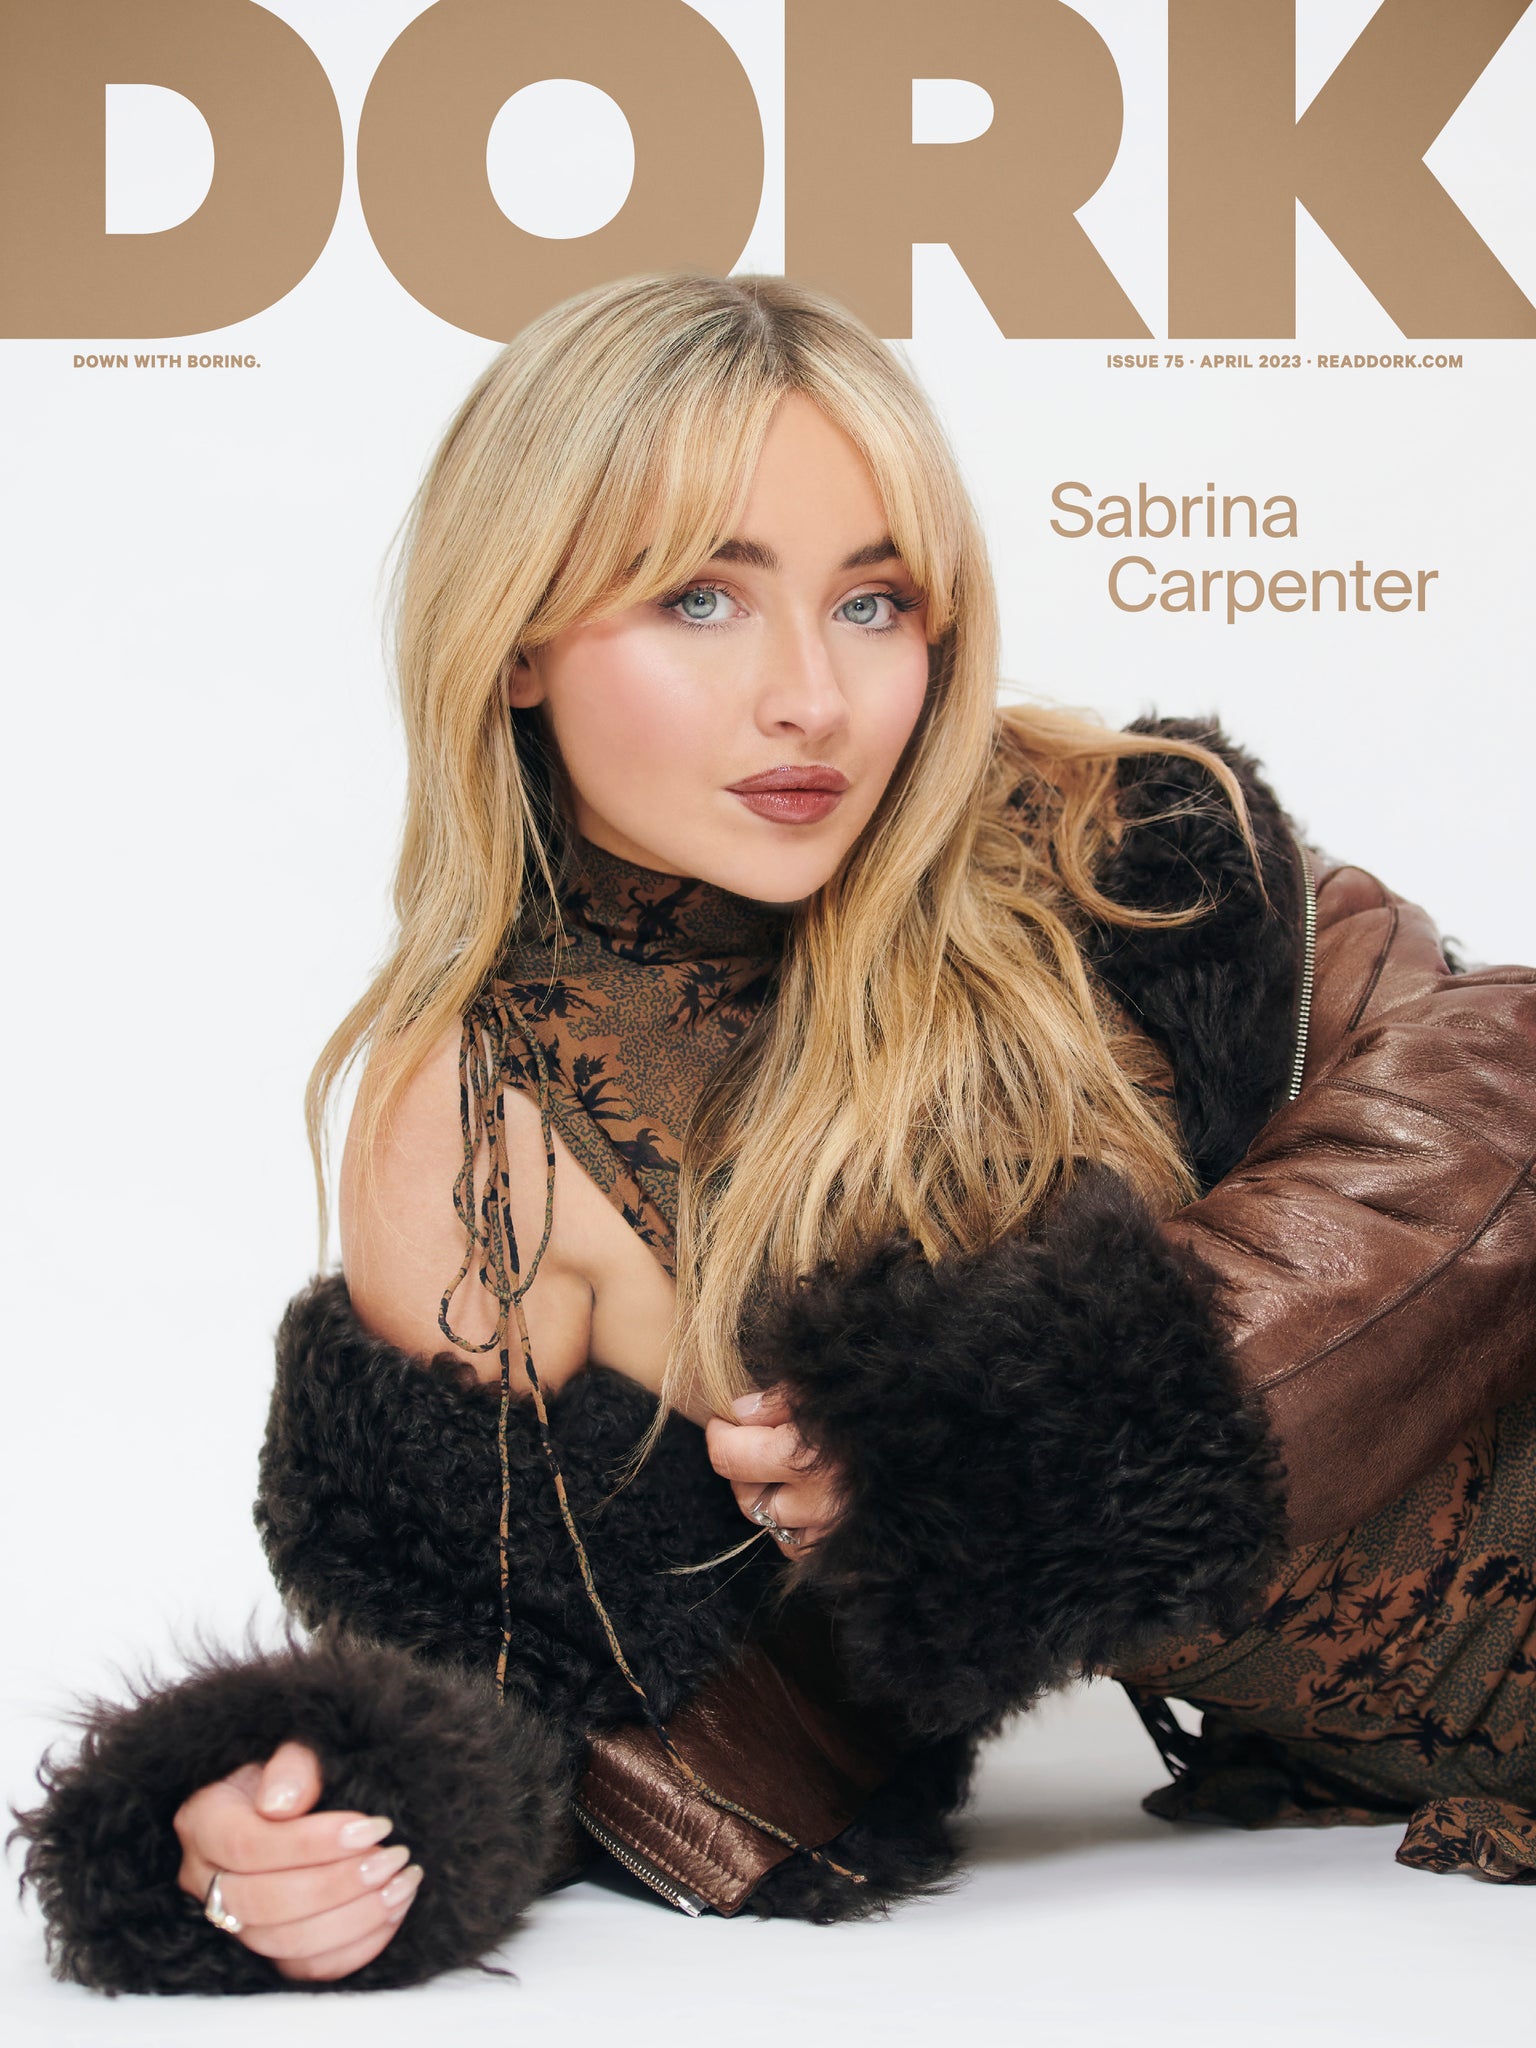 Dork, April 2023 (Sabrina Carpenter cover)